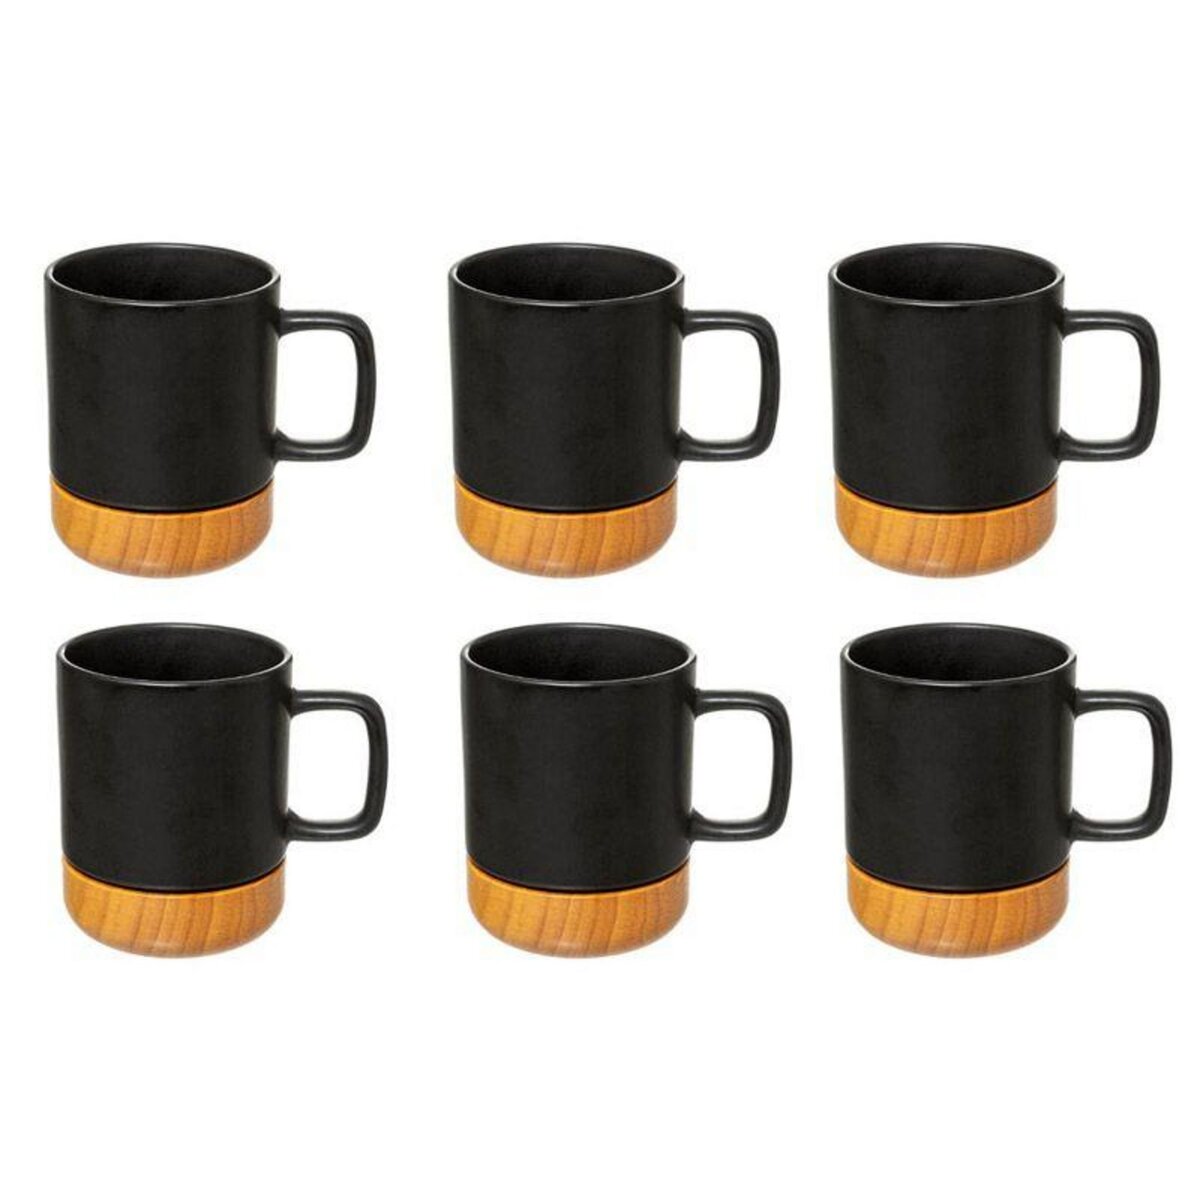  Lot de 6 Mugs Ronds  Modern Wood  43cl Noir